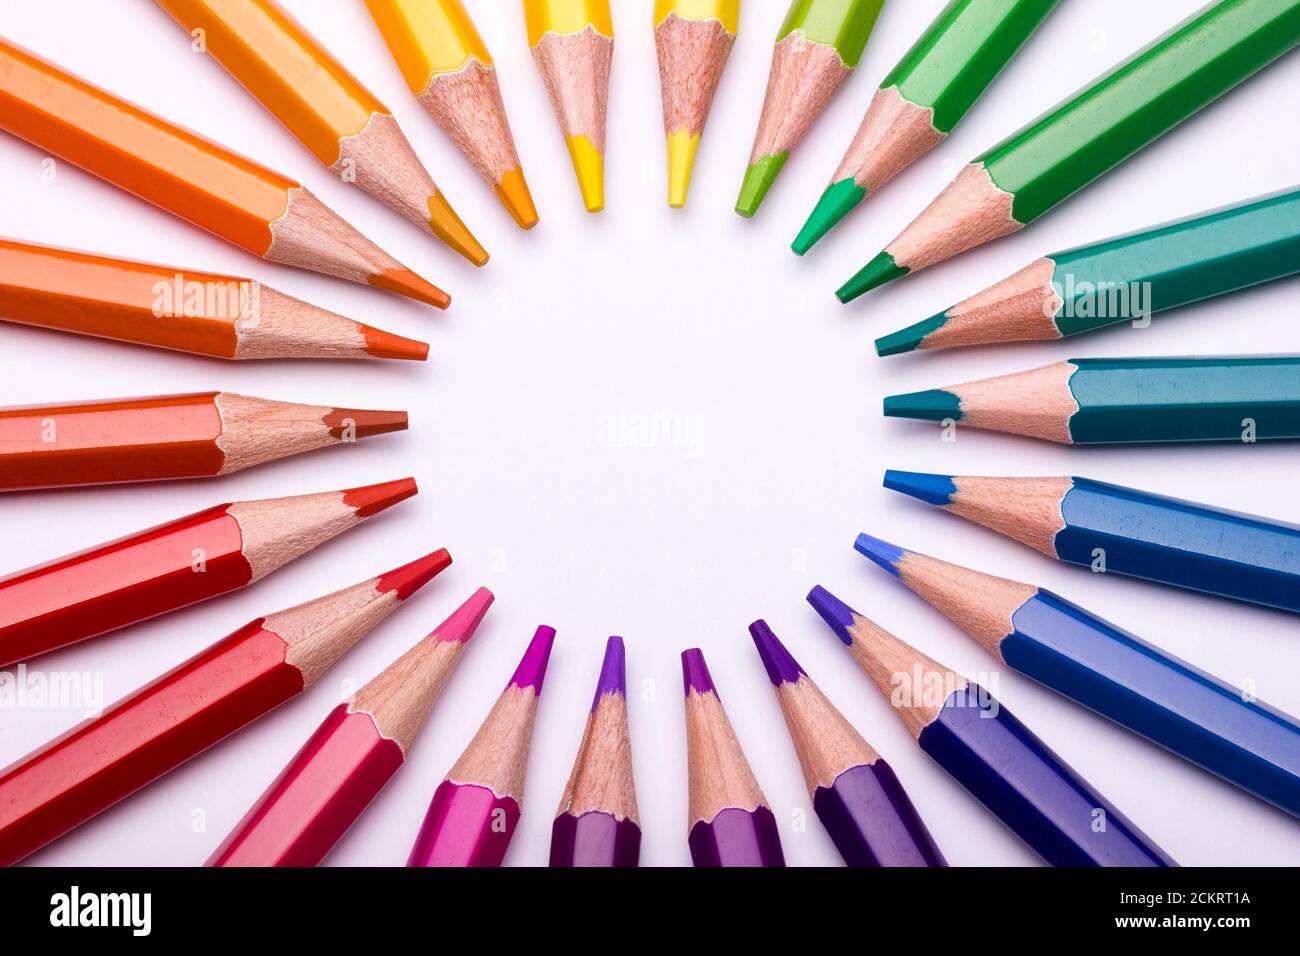 Circular arranged colour pencils constituting the colour wheel Stock Photo